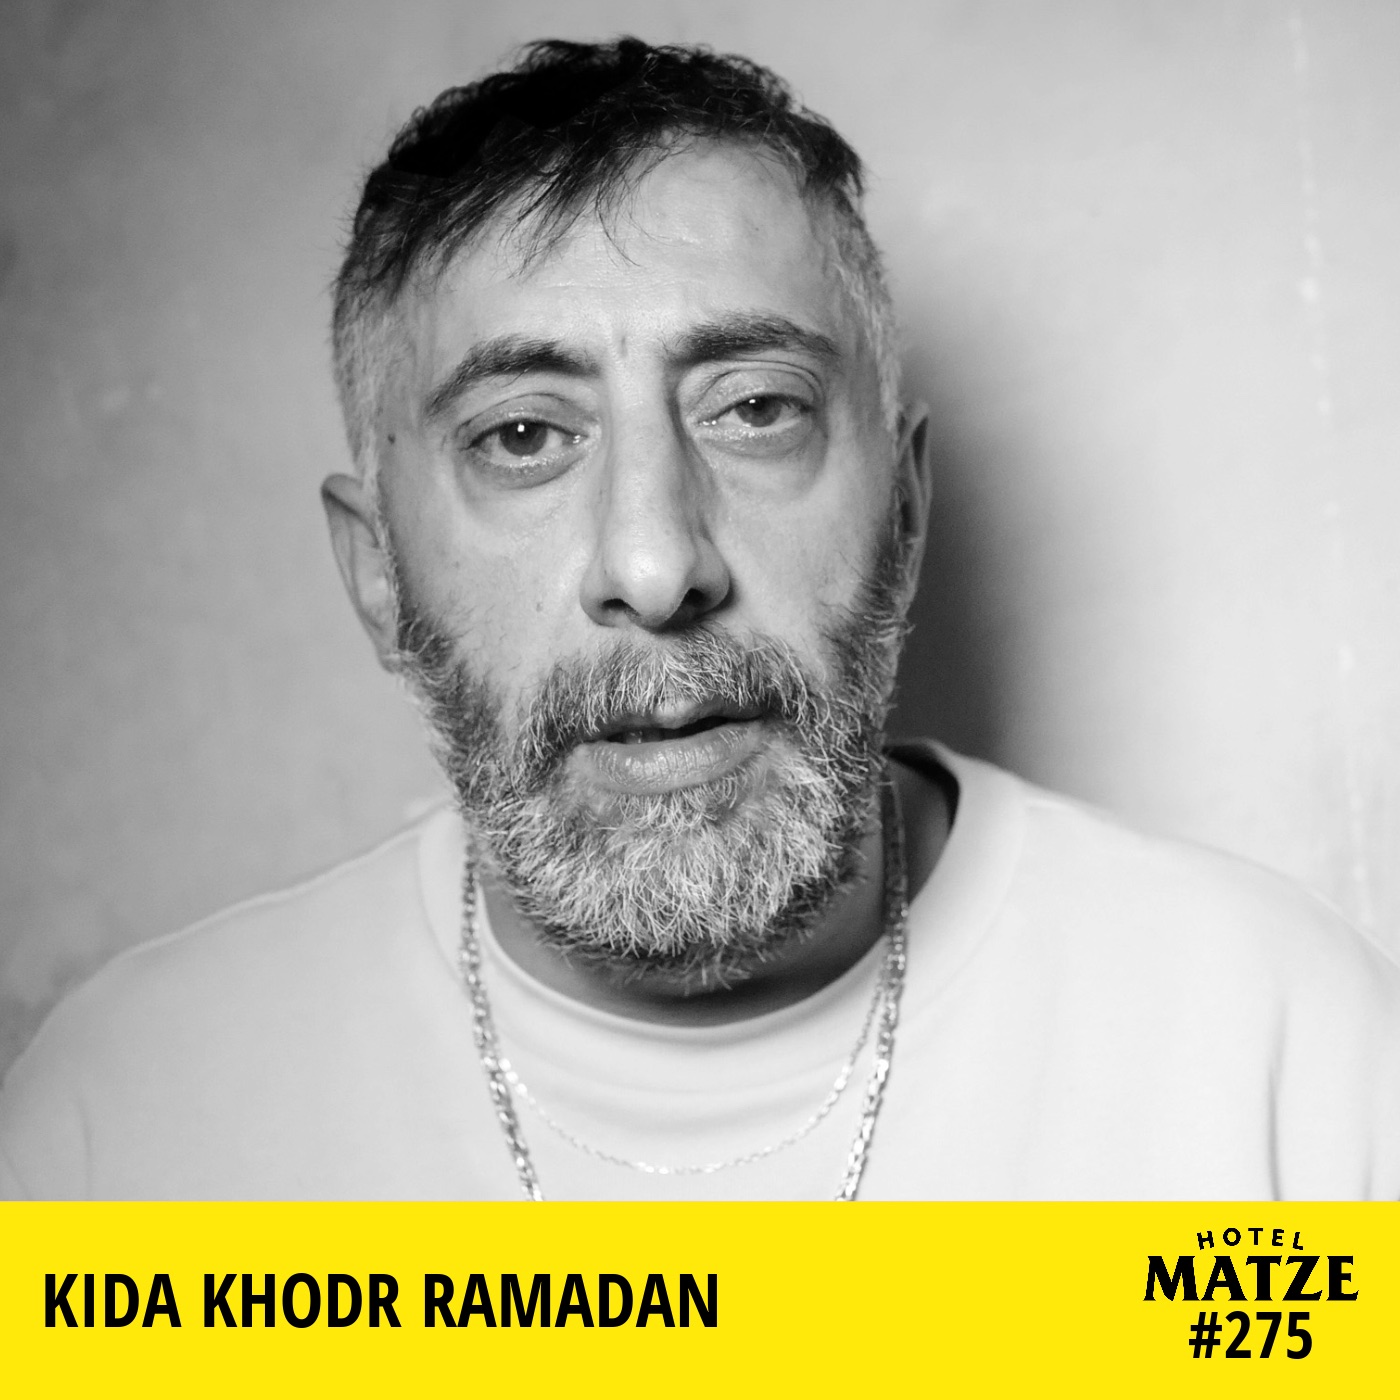 Kida Khodr Ramadan - Wie hast du deine Menschlichkeit verloren?